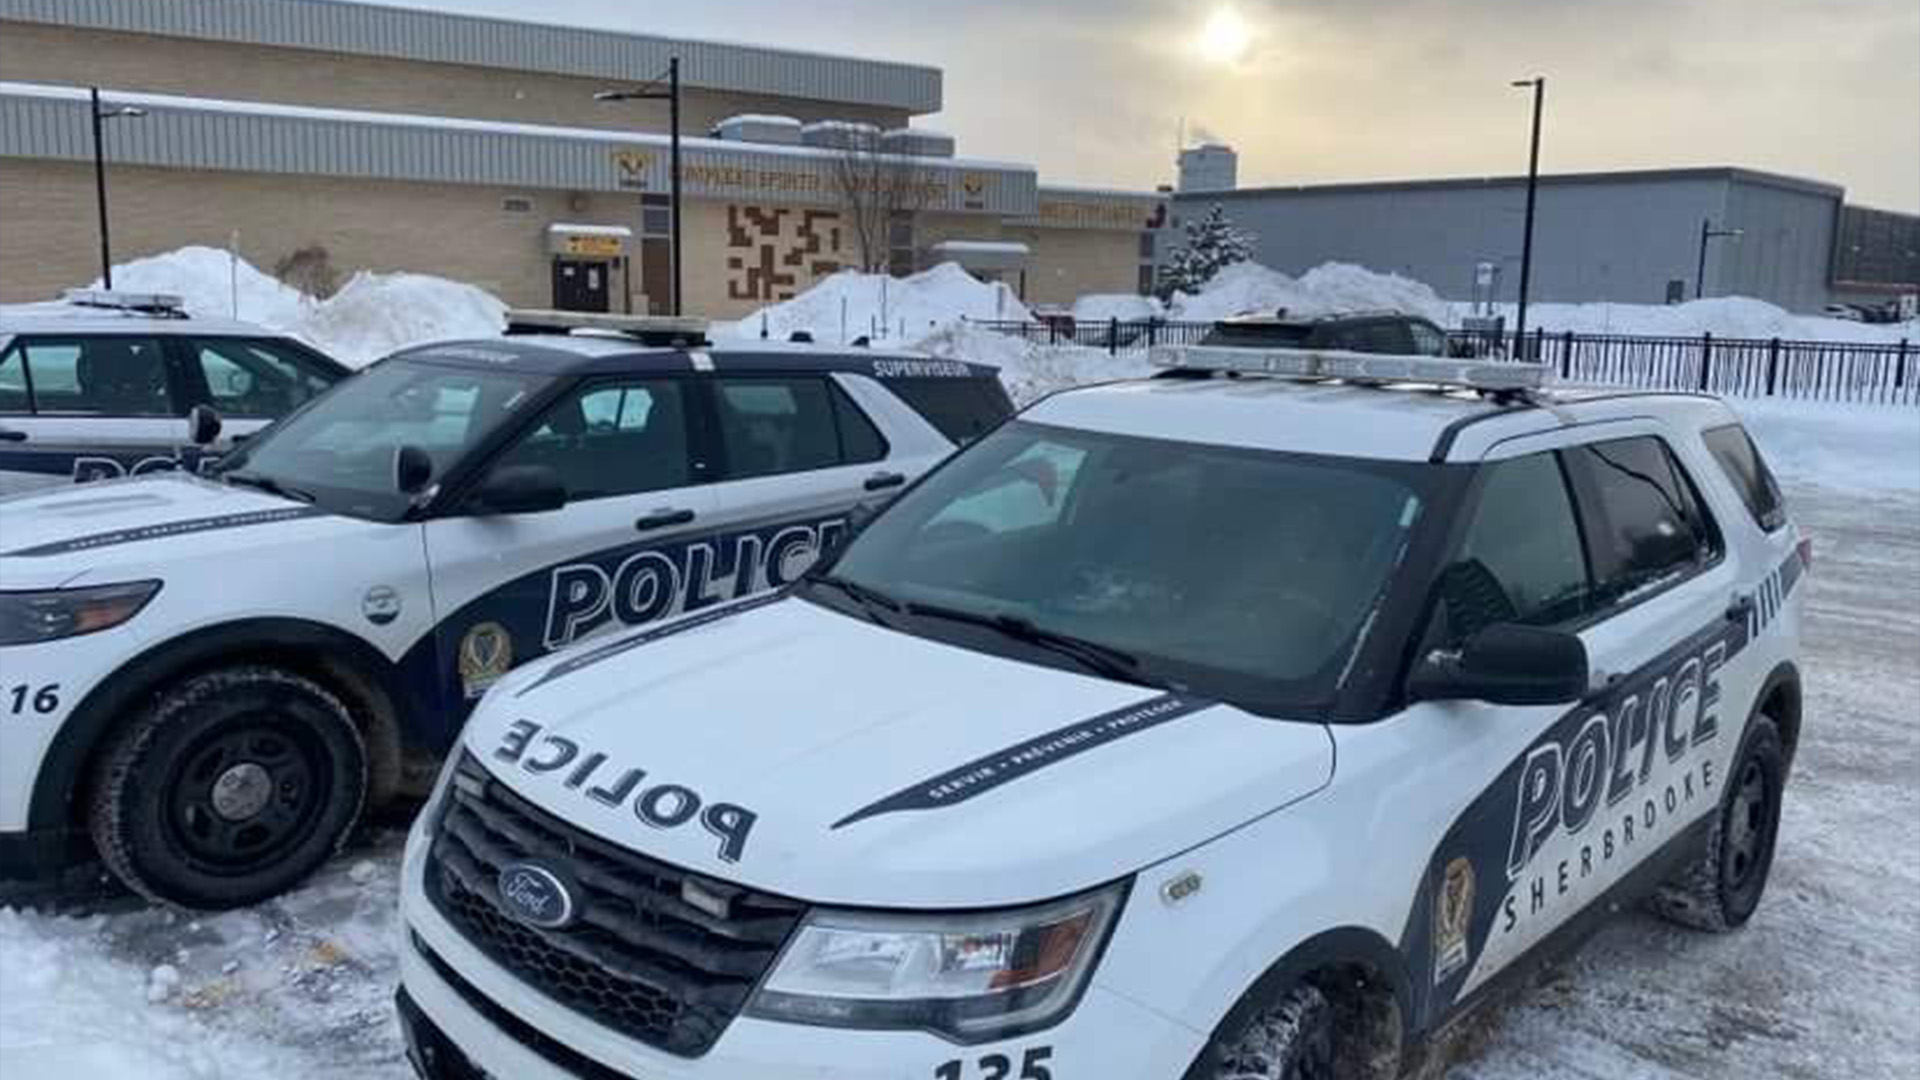 Le Service de police de Sherbrooke avait procédé à l'arrestation d'un individu de 26 ans, en lien avec l'appel à la bombe effectué à l'endroit de l'école secondaire du Triolet de Sherbrooke, le 27 janvier dernier. L'individu a été arrêté de nouveau à Québec, mercredi matin.